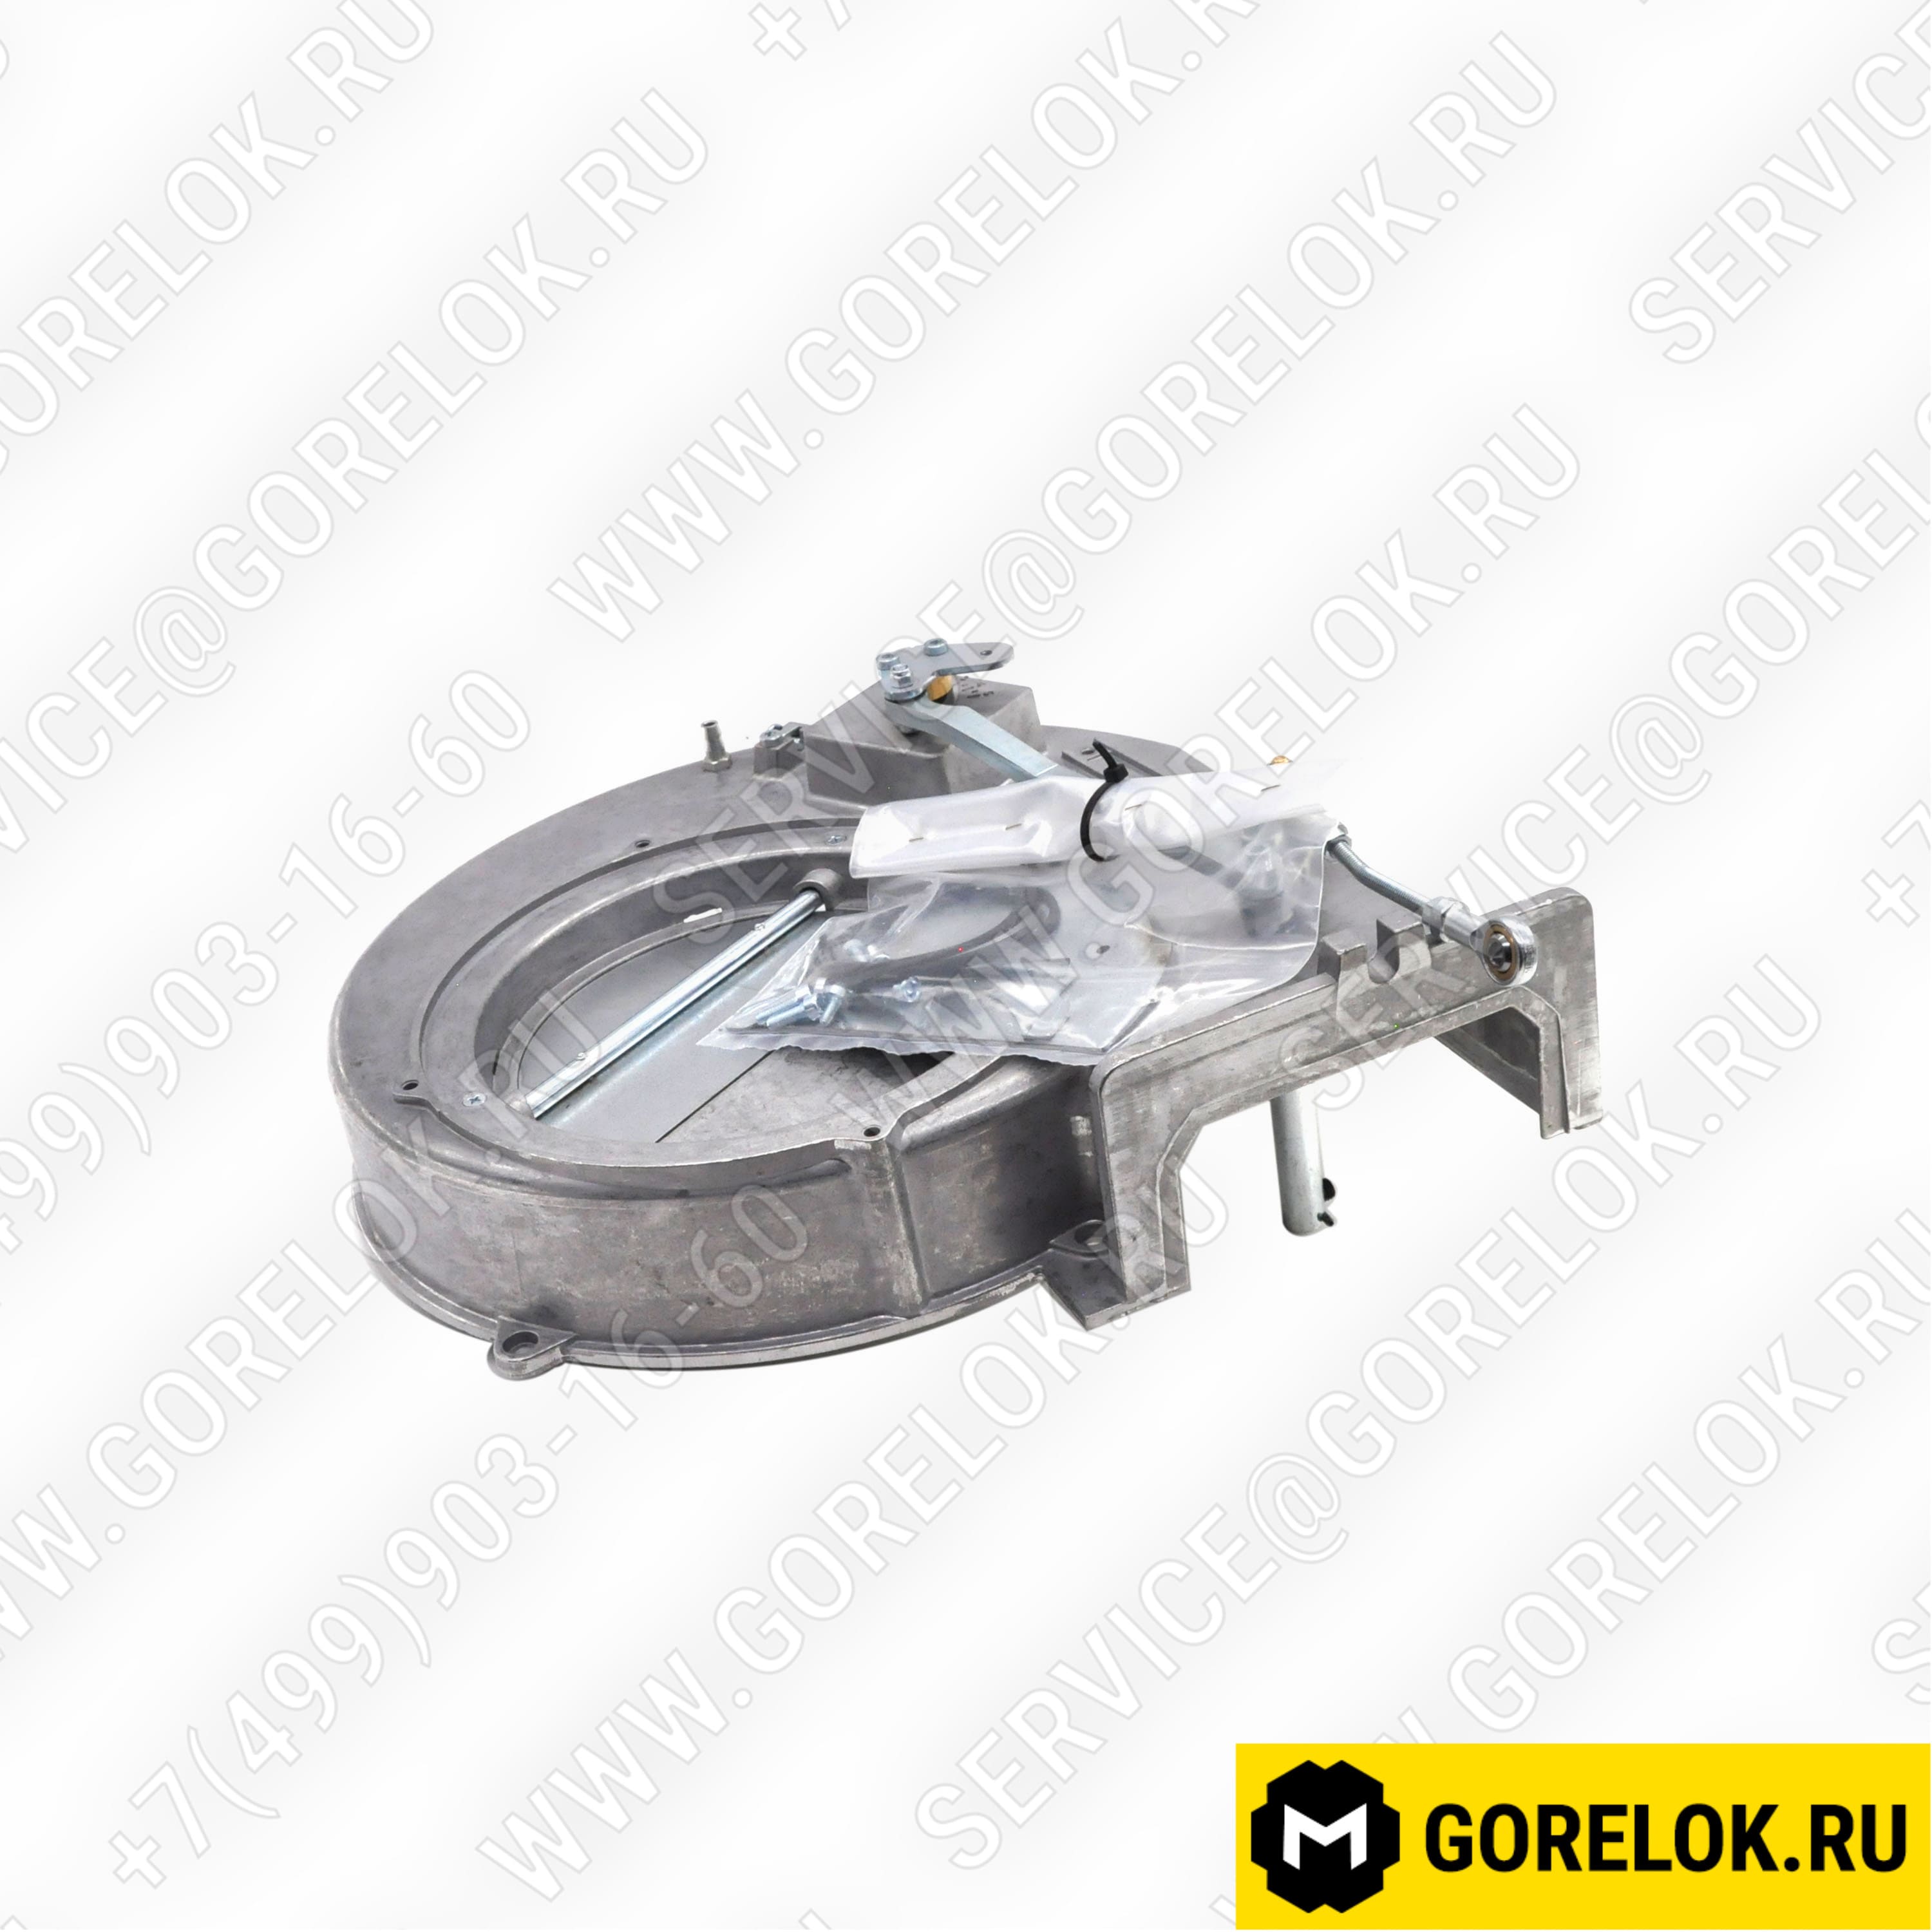 65326797 Купить 4R105098 Двигатель Riello / Риелло | Zipgorelok.ru